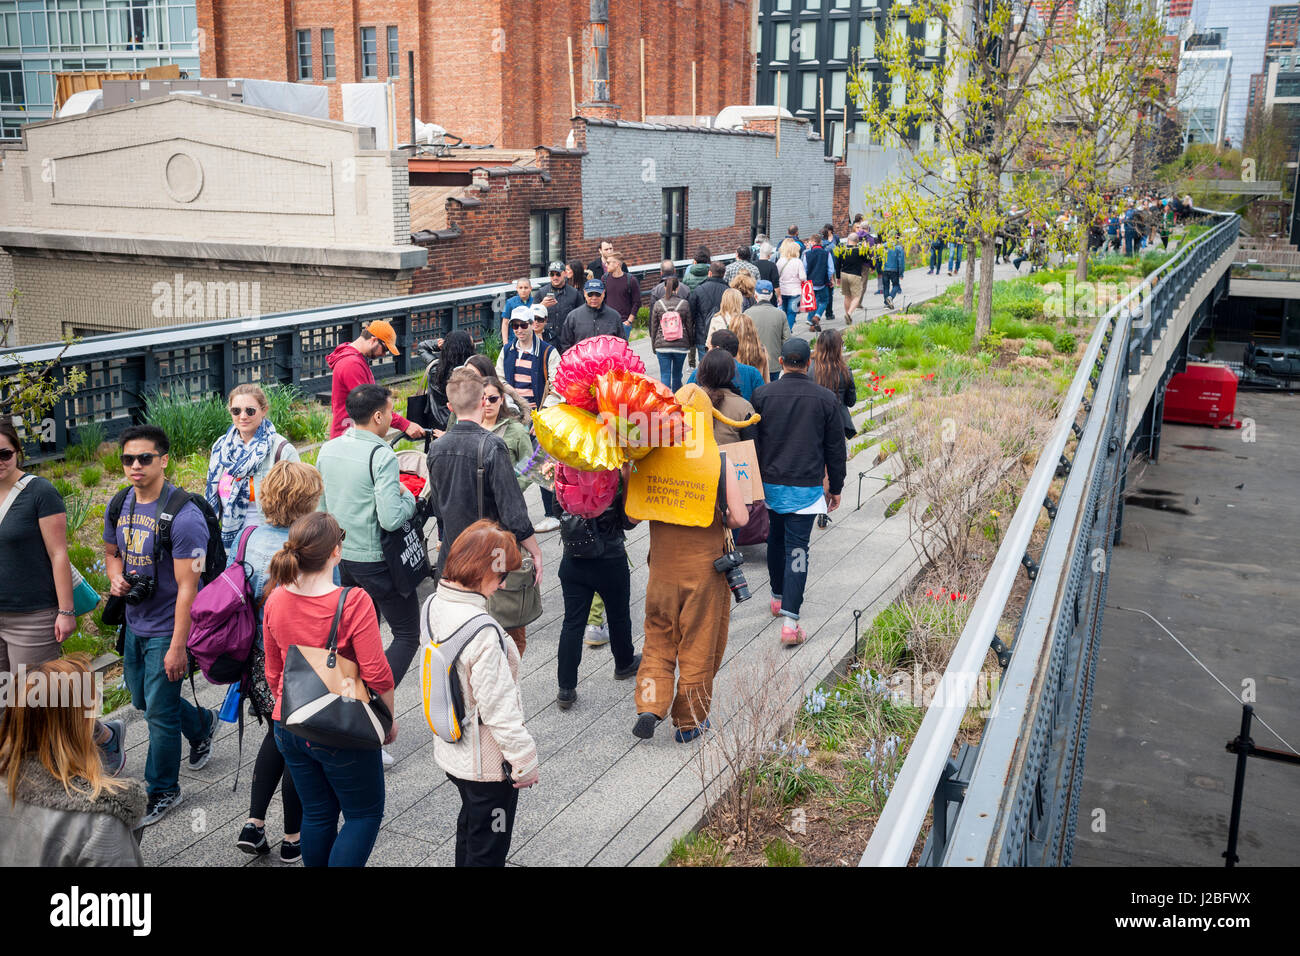 L'artiste brésilienne, André Feliciano connu sous le nom de "l'art jardinier' marche dans le parc High Line à New York le Dimanche, Avril 23, 2017 La distribution de ballons et de fleurs à passant dans sa pièce d'art performance, le Floraissance parade. Le Floraissance est un mouvement artistique créé par Feliciano basé sur l'idée que l'art contemporain ne peut pas décrire plus et nous aller de l'art dans la prochaine phase de croissance, comme des fleurs, dans le Floraissance. (© Richard B. Levine) Banque D'Images